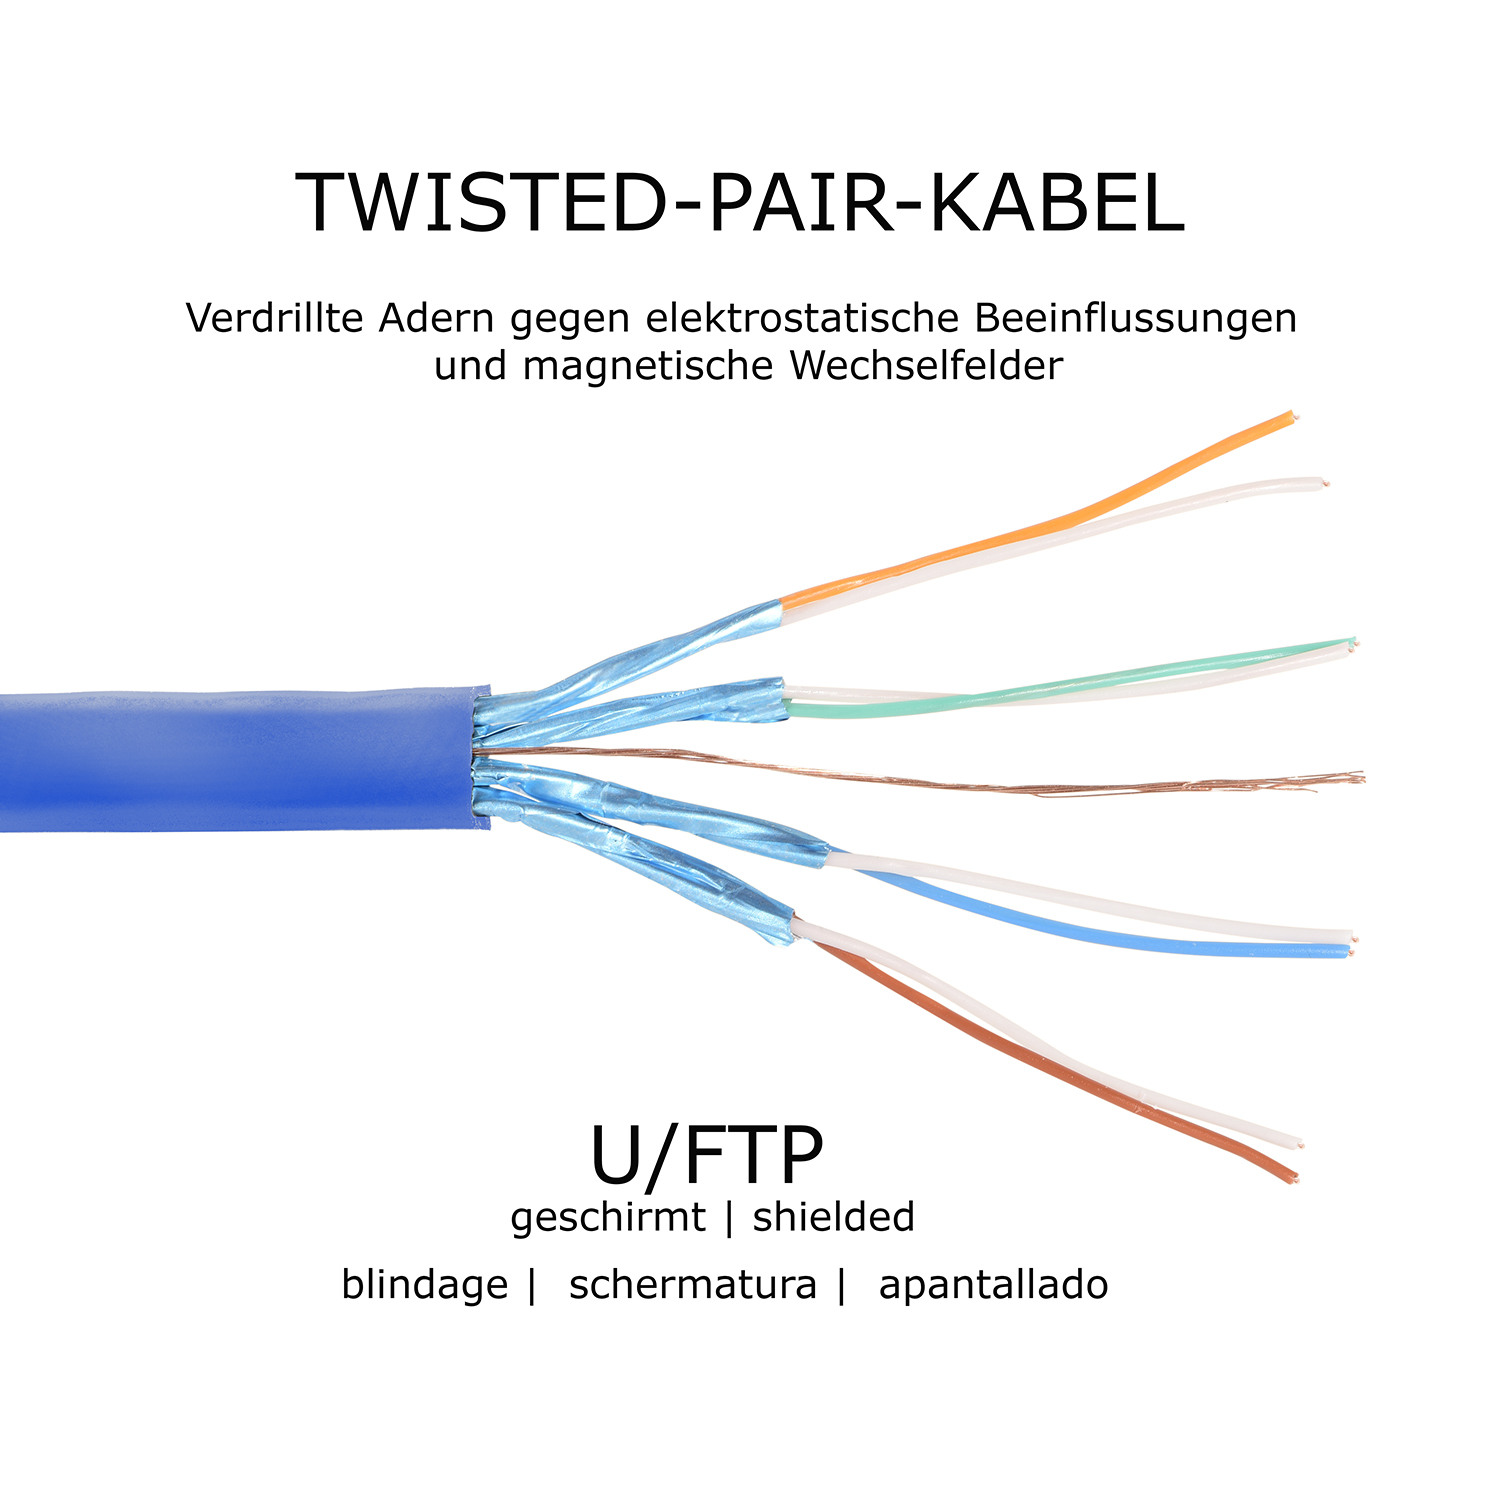 blau, GBit, U/FTP TPFNET / 50m Netzwerkkabel, 10 Patchkabel Flachkabel m 50